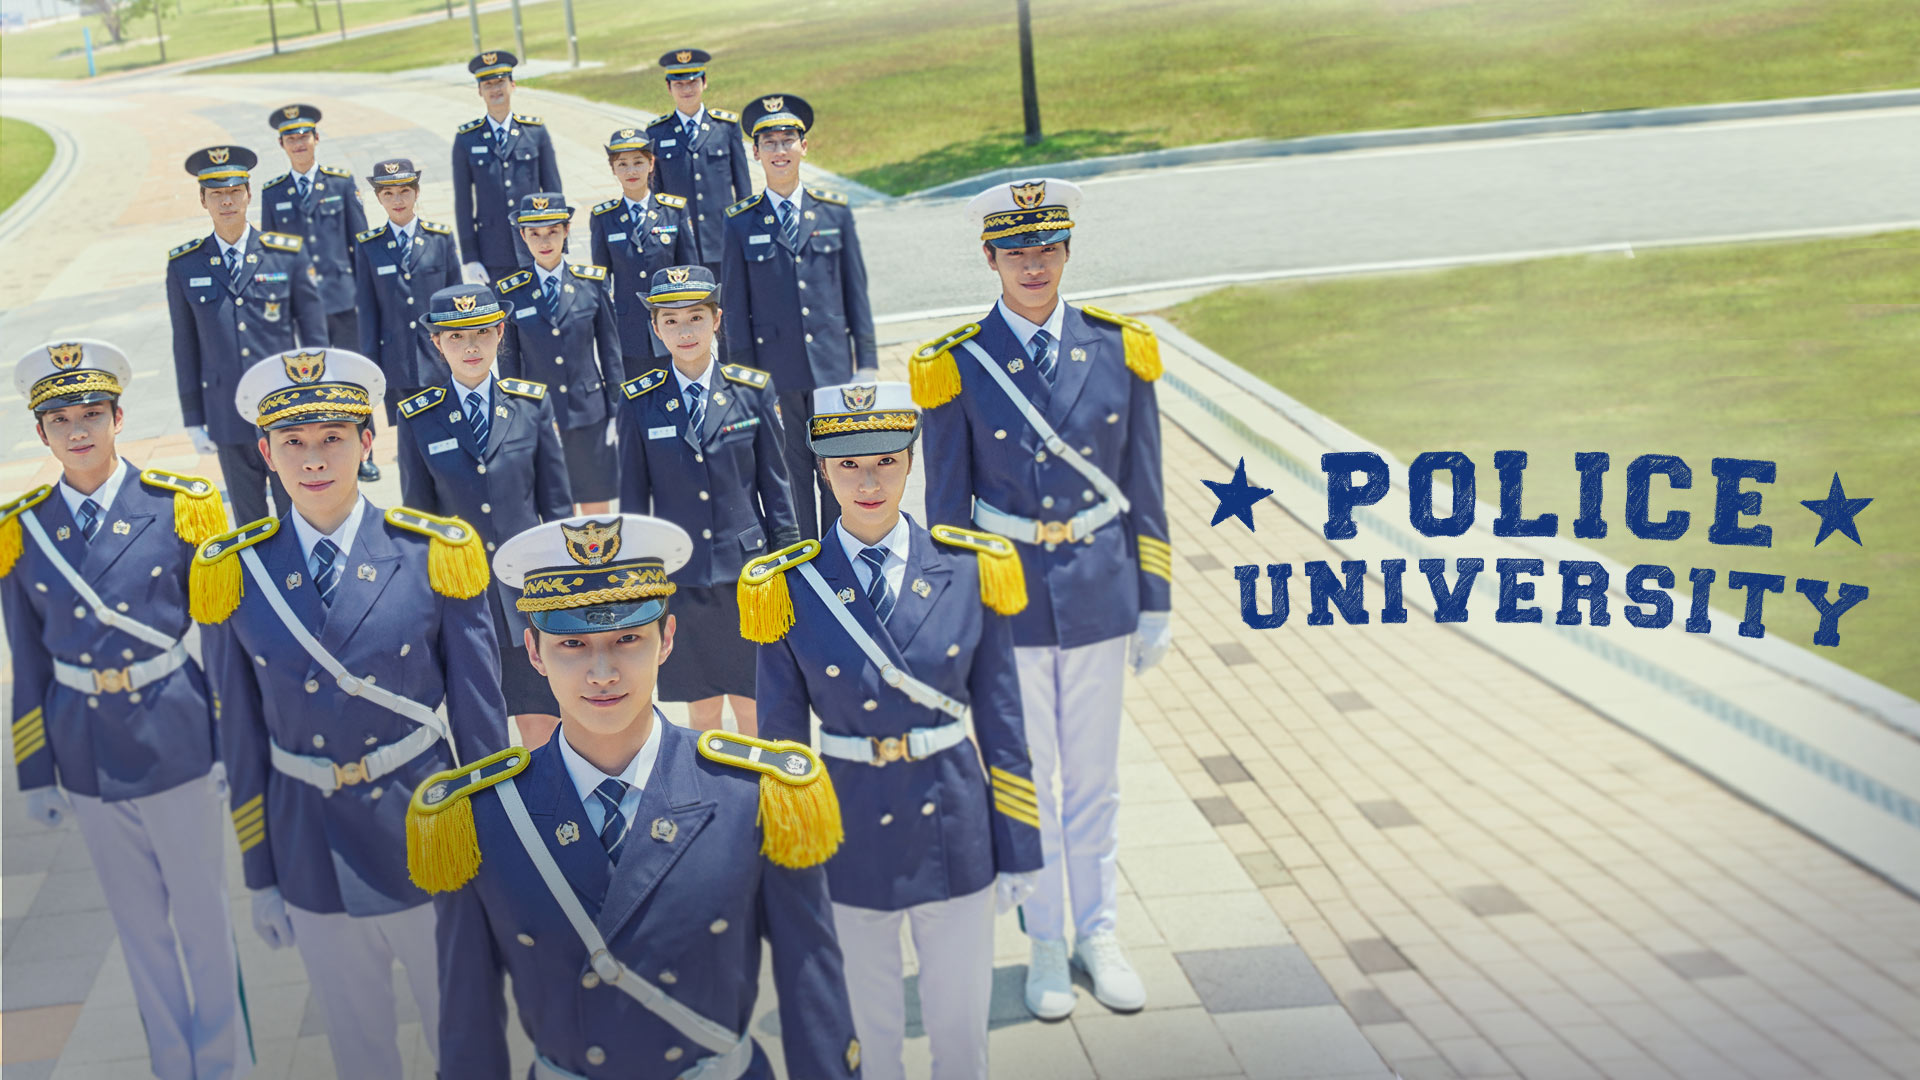 Police University (Dok. VIU)